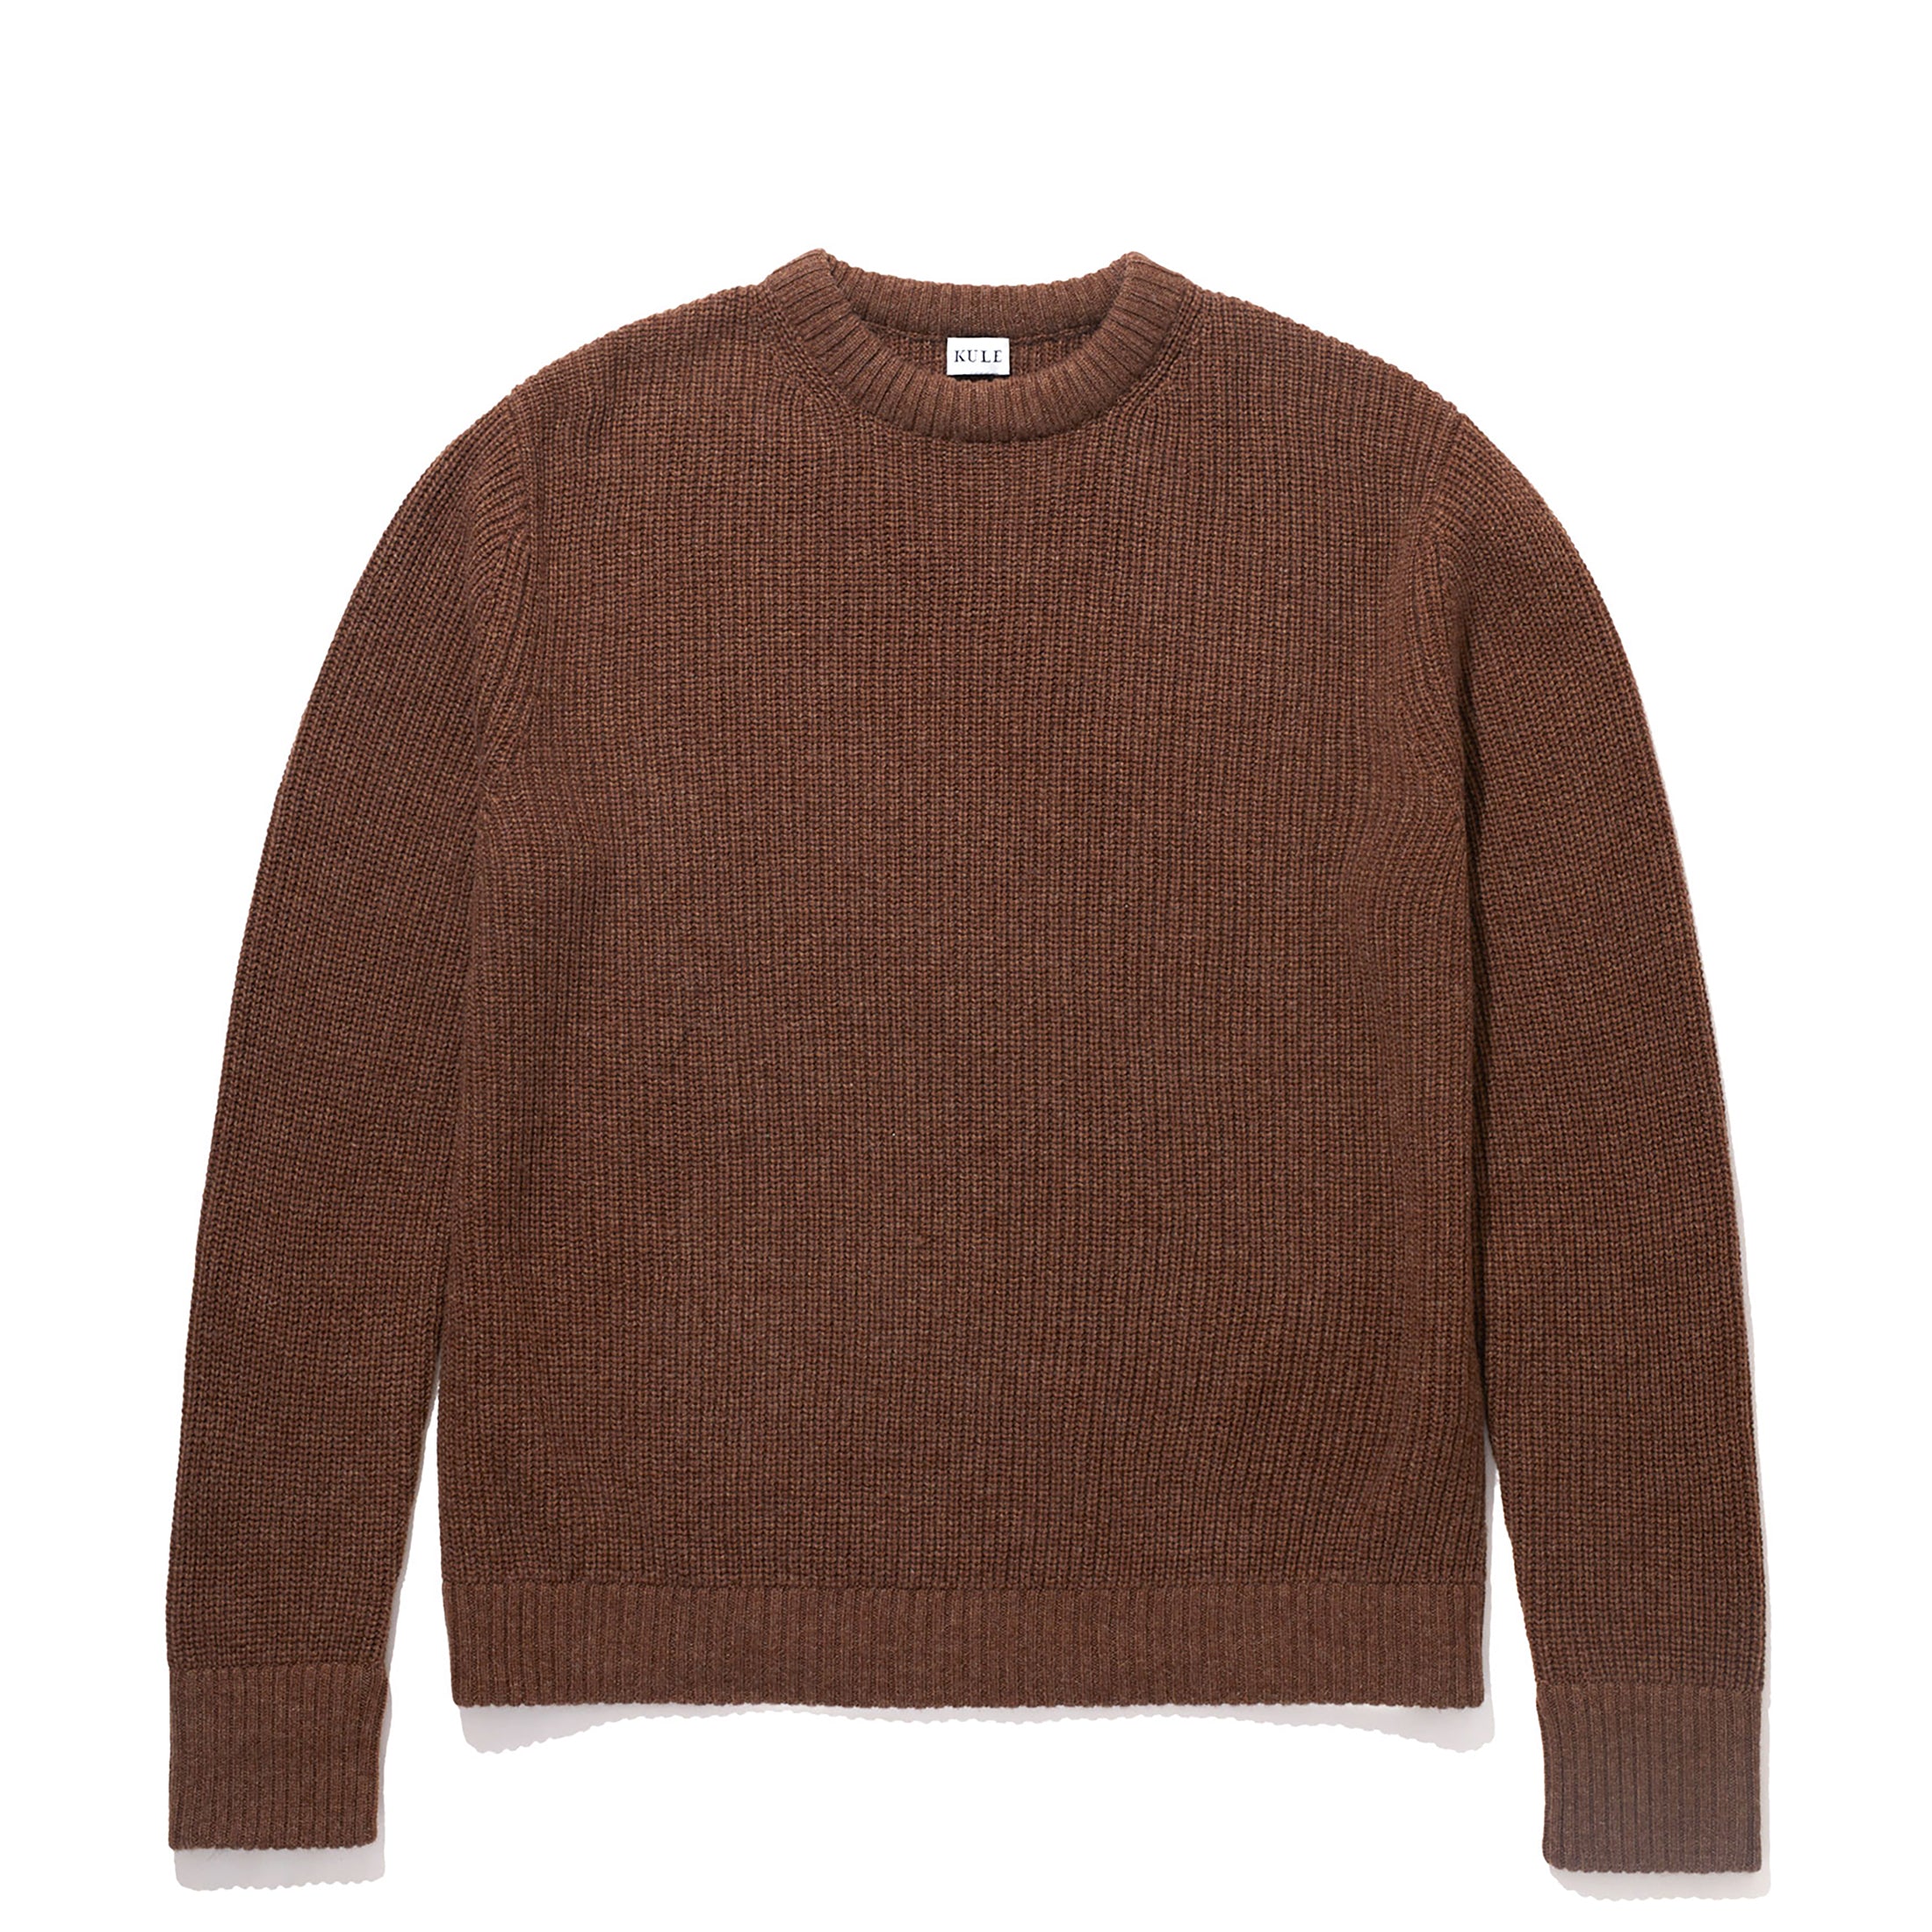 The Alden - Buttercream Sweater by KULE | Xs